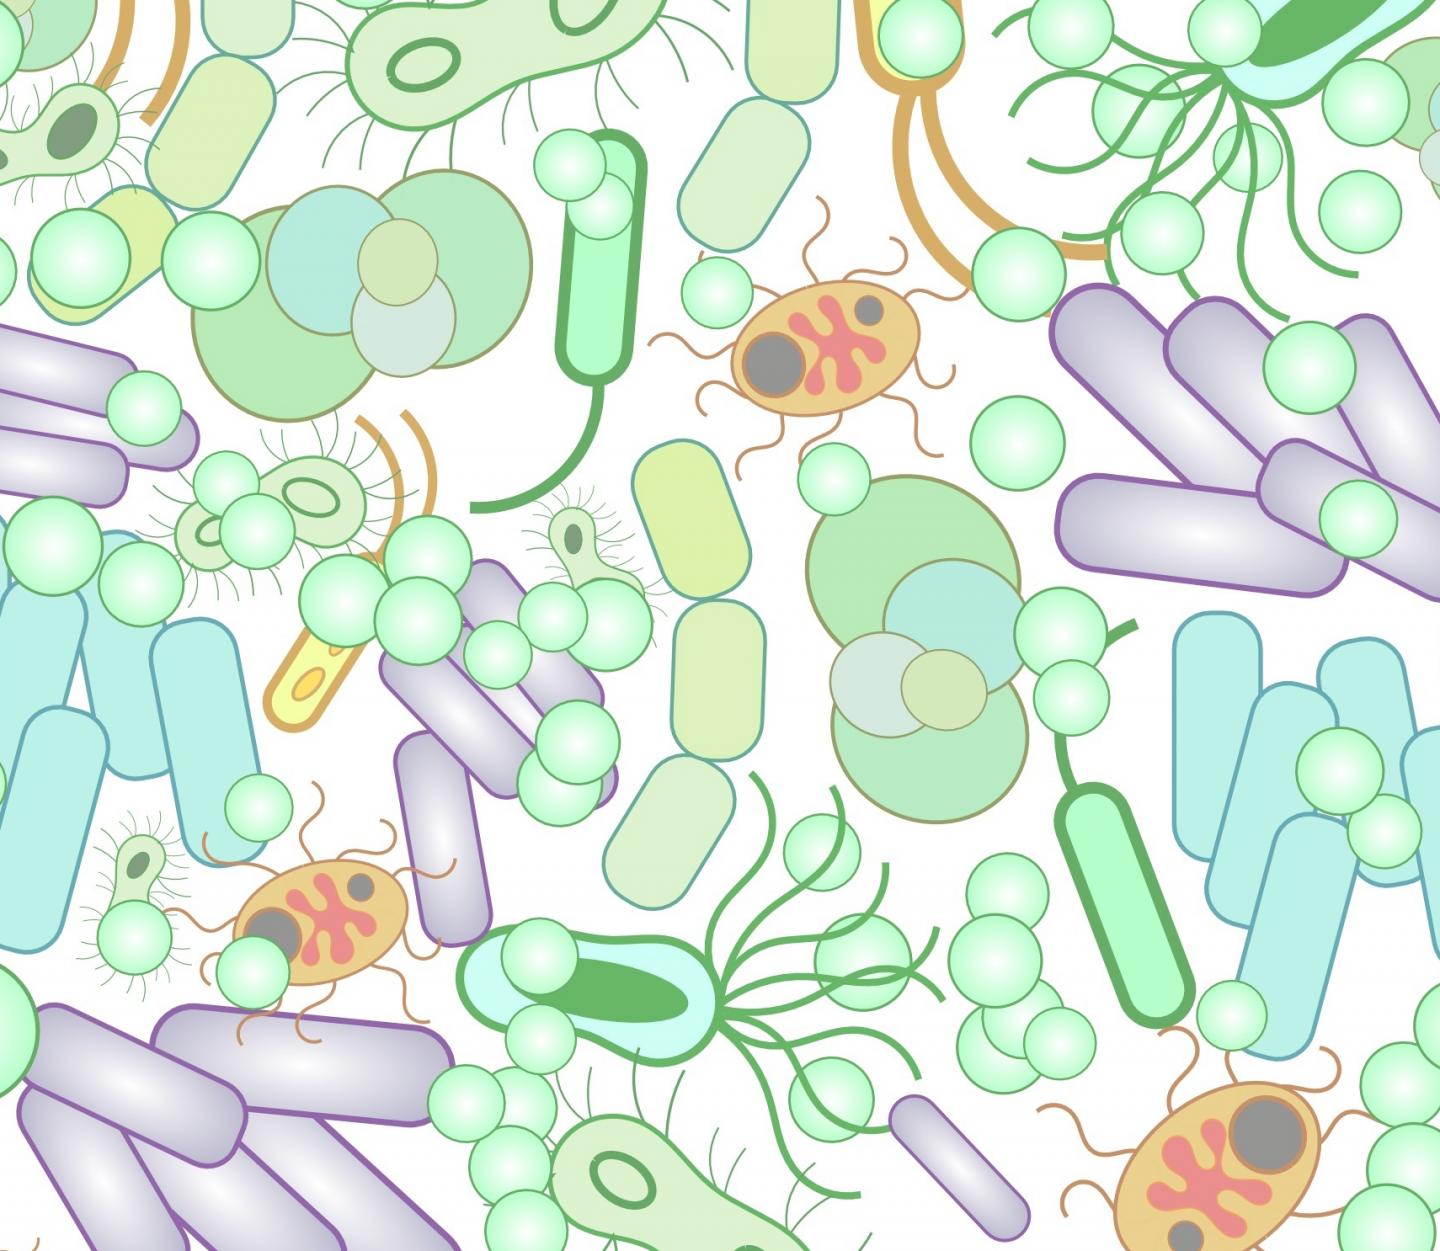 Микробиомная технология с селеном. Микробиом. Микробиом это в микробиологии. Микробиом человека. Разнообразие микробиома.